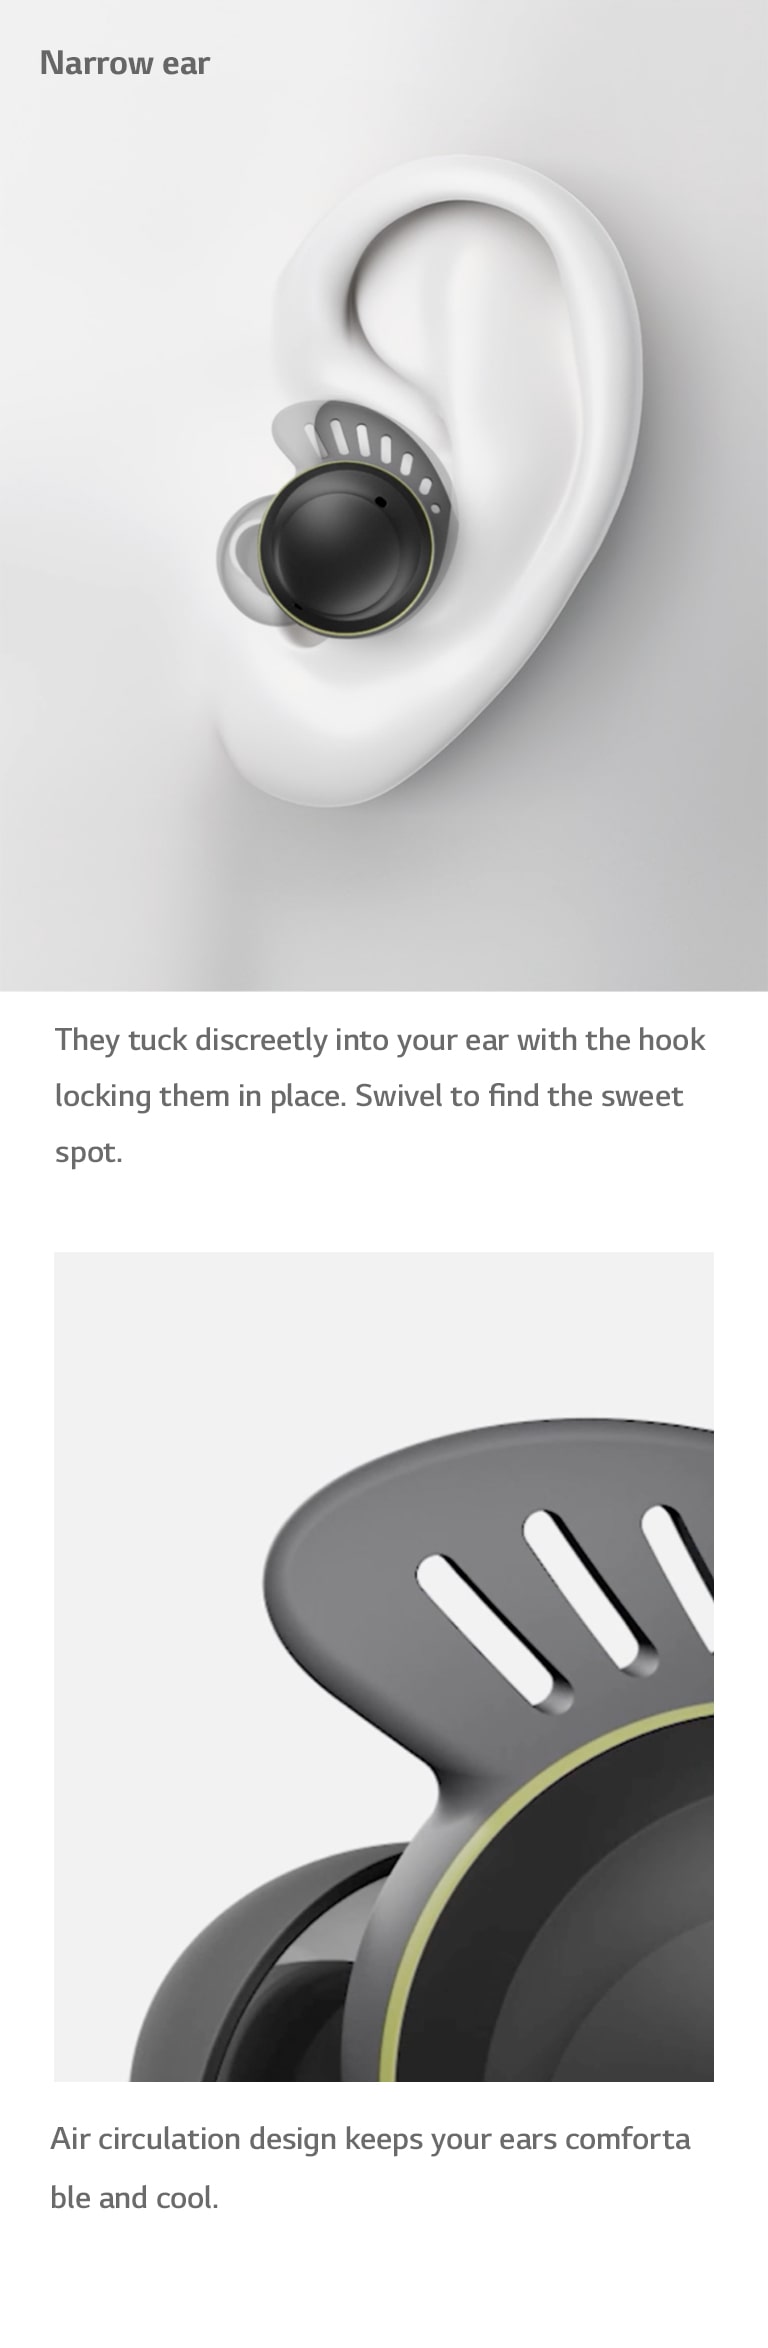 En el video de la izquierda, los audífonos se insertan en formas de oído promedio, anchas y estrechas. El video de la derecha muestra cómo el aire fluye a través de los agujeros en el gancho para la oreja, para una sensación agradable y refrescante.